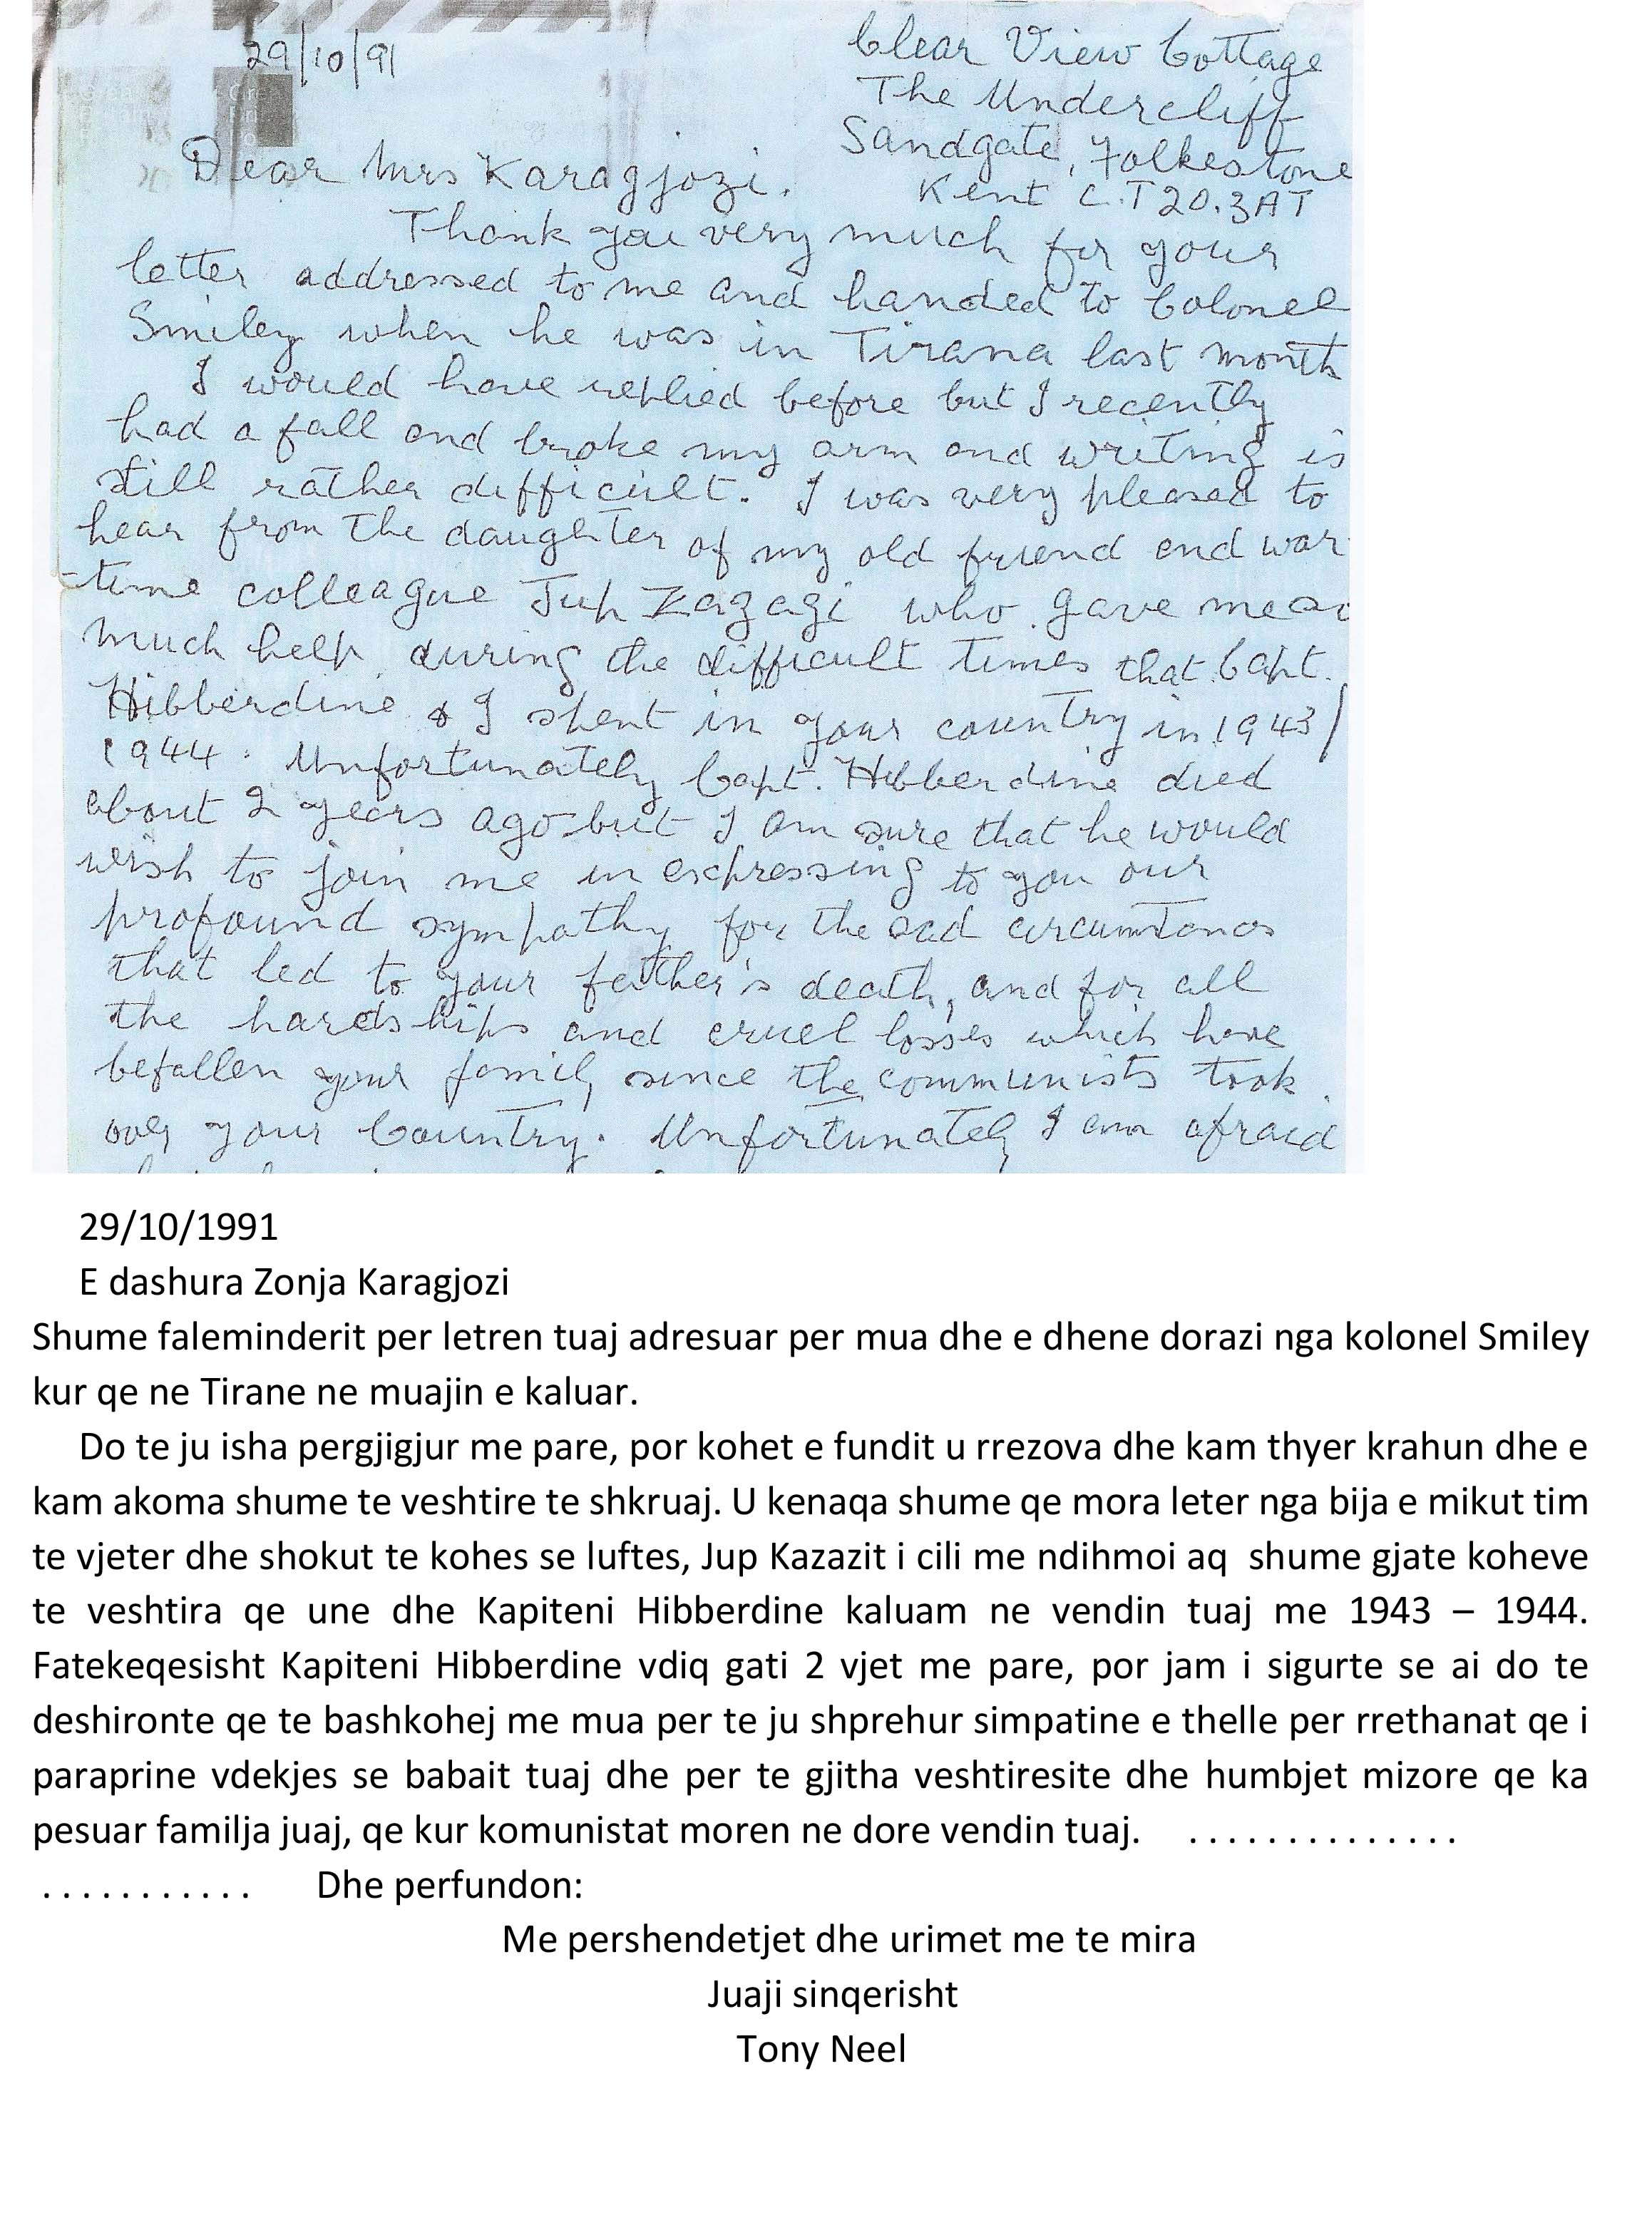 Microsoft Word - Letra Kol Neel-1991-angl e shqip